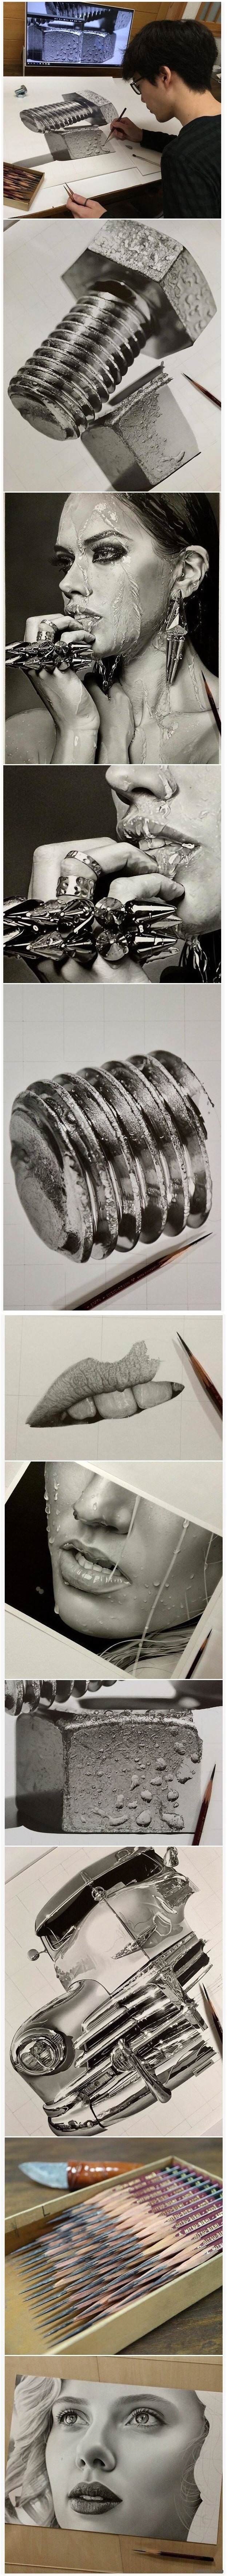 연필로만 그린 그림.jpg